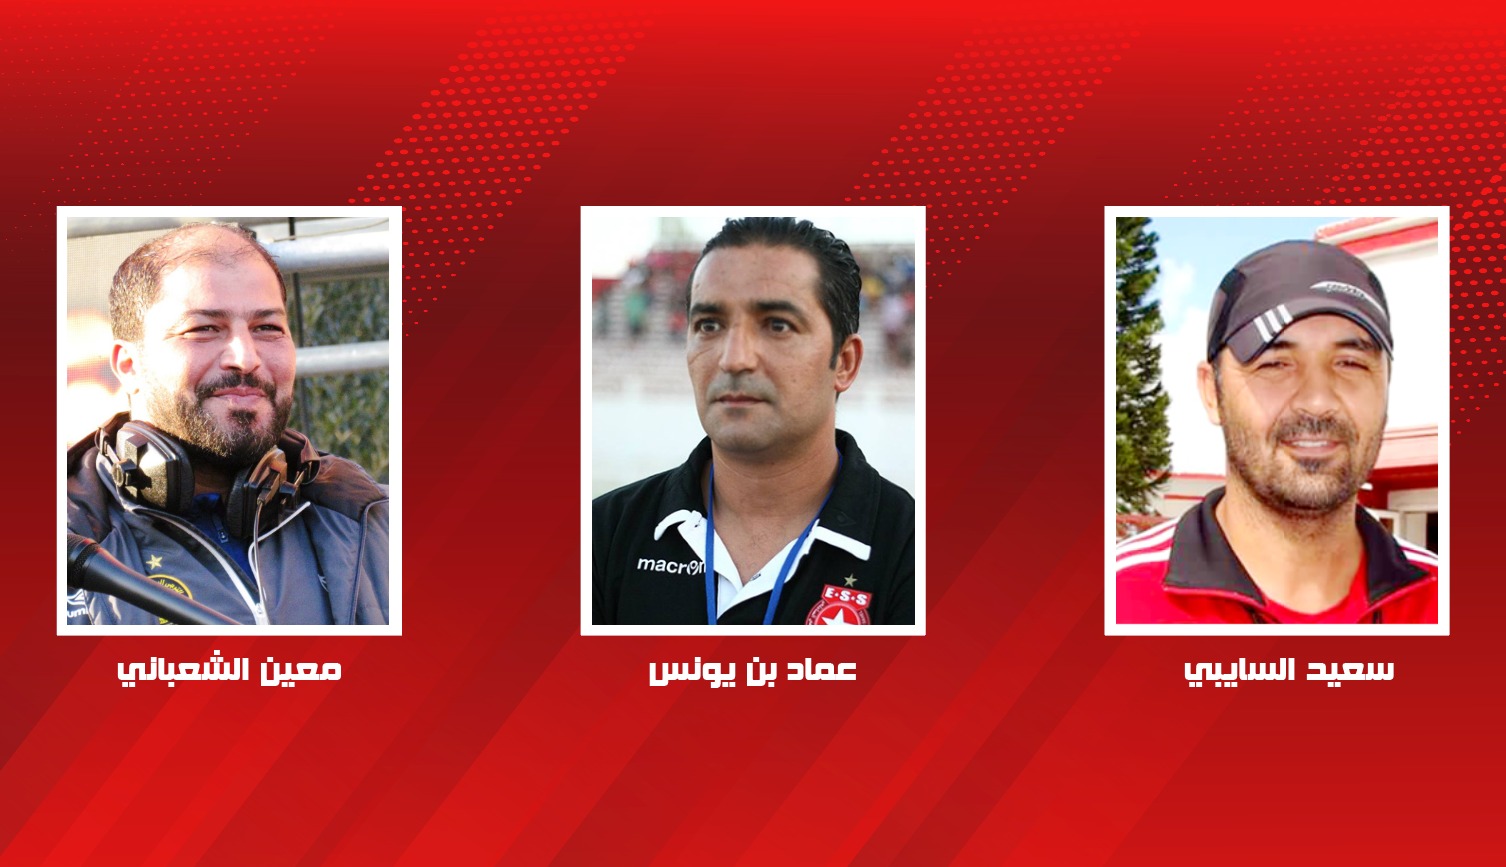 جامعة كرة القدم : مبروك لهذا الثلاثي   وحضور قياسي للمدرب التونسي قاريا وعربيا 